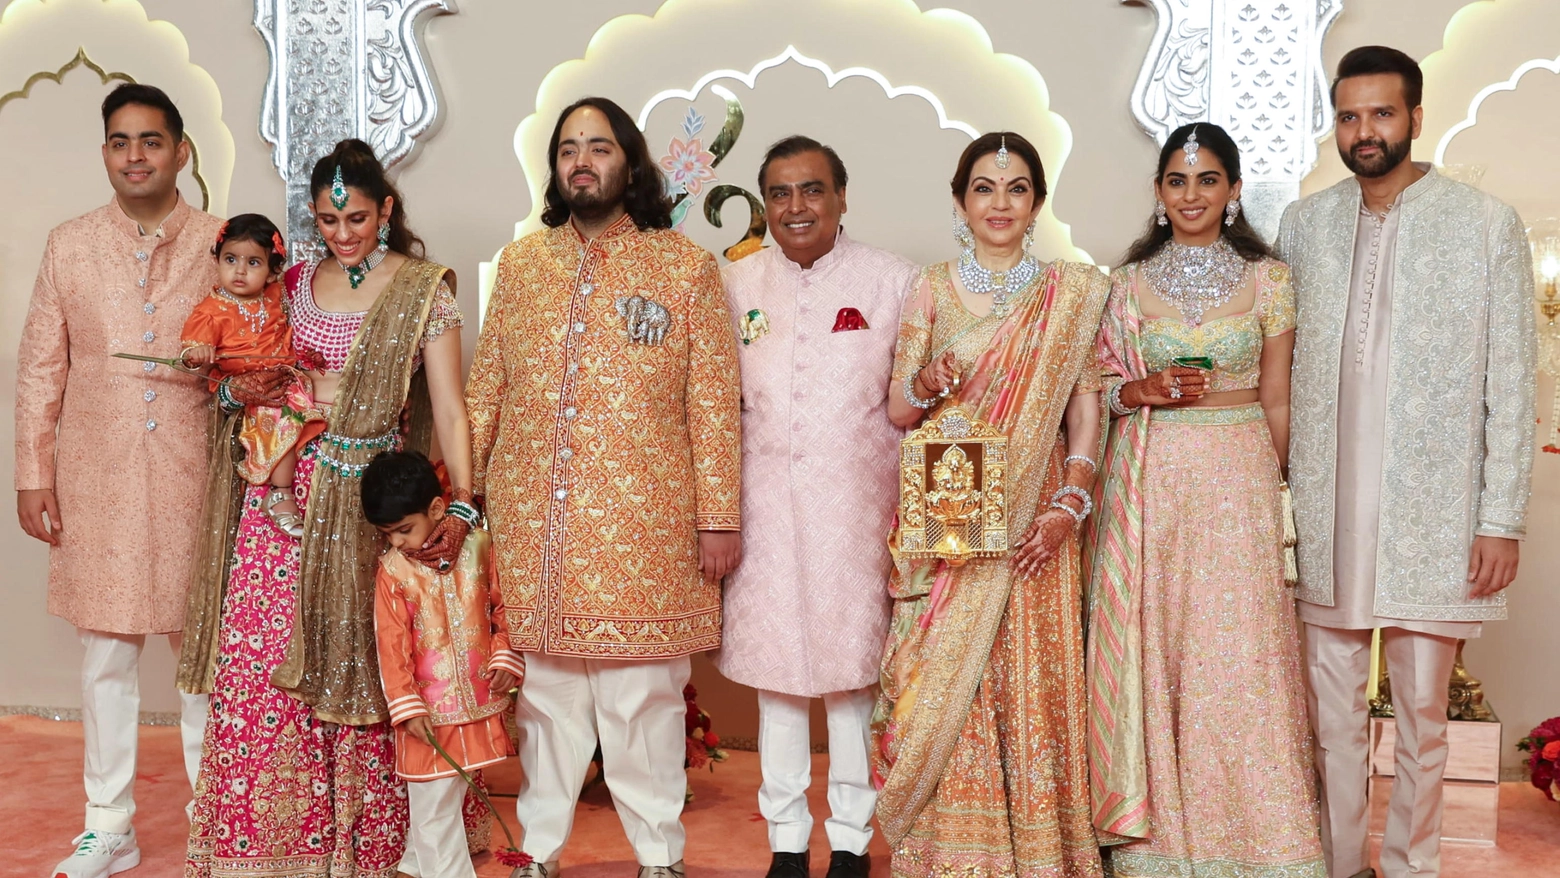 La famiglia Ambani. Al centro, Mukesh Ambani, l'uomo più ricco dell'Asia (Ansa)